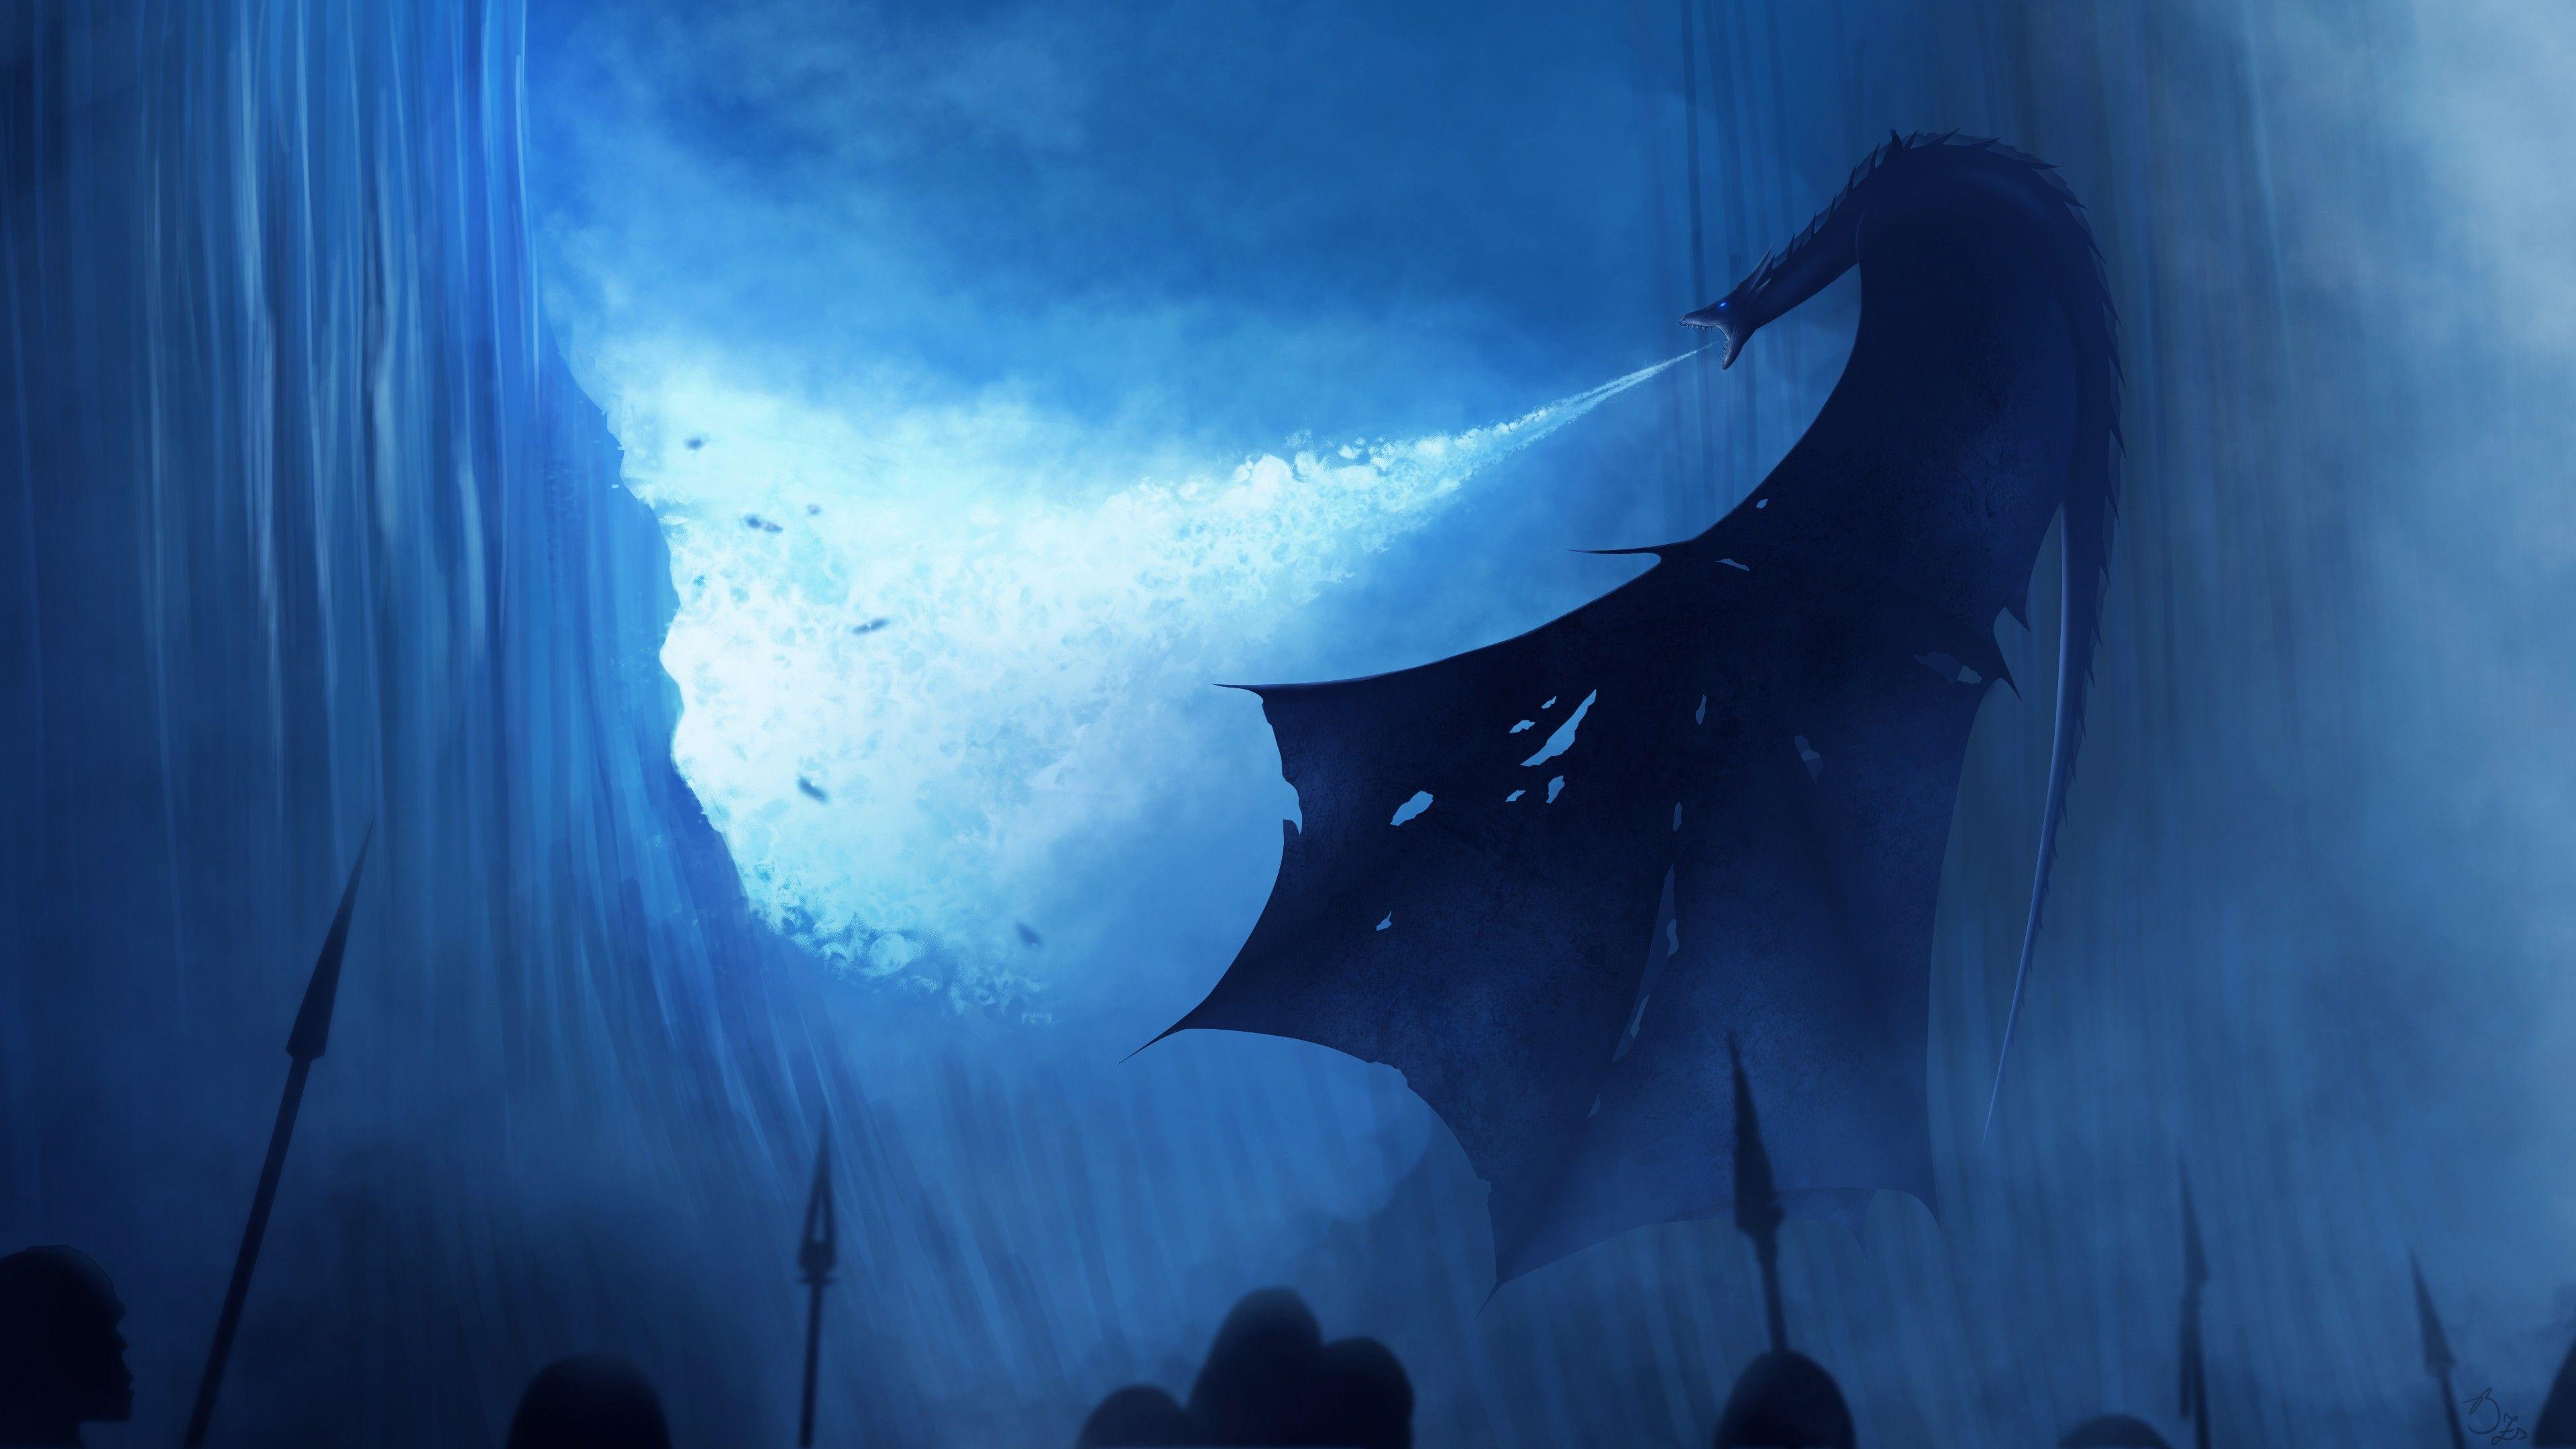 White Walker Ice Dragon Game Of Thrones 4k Got. The best wallpaper